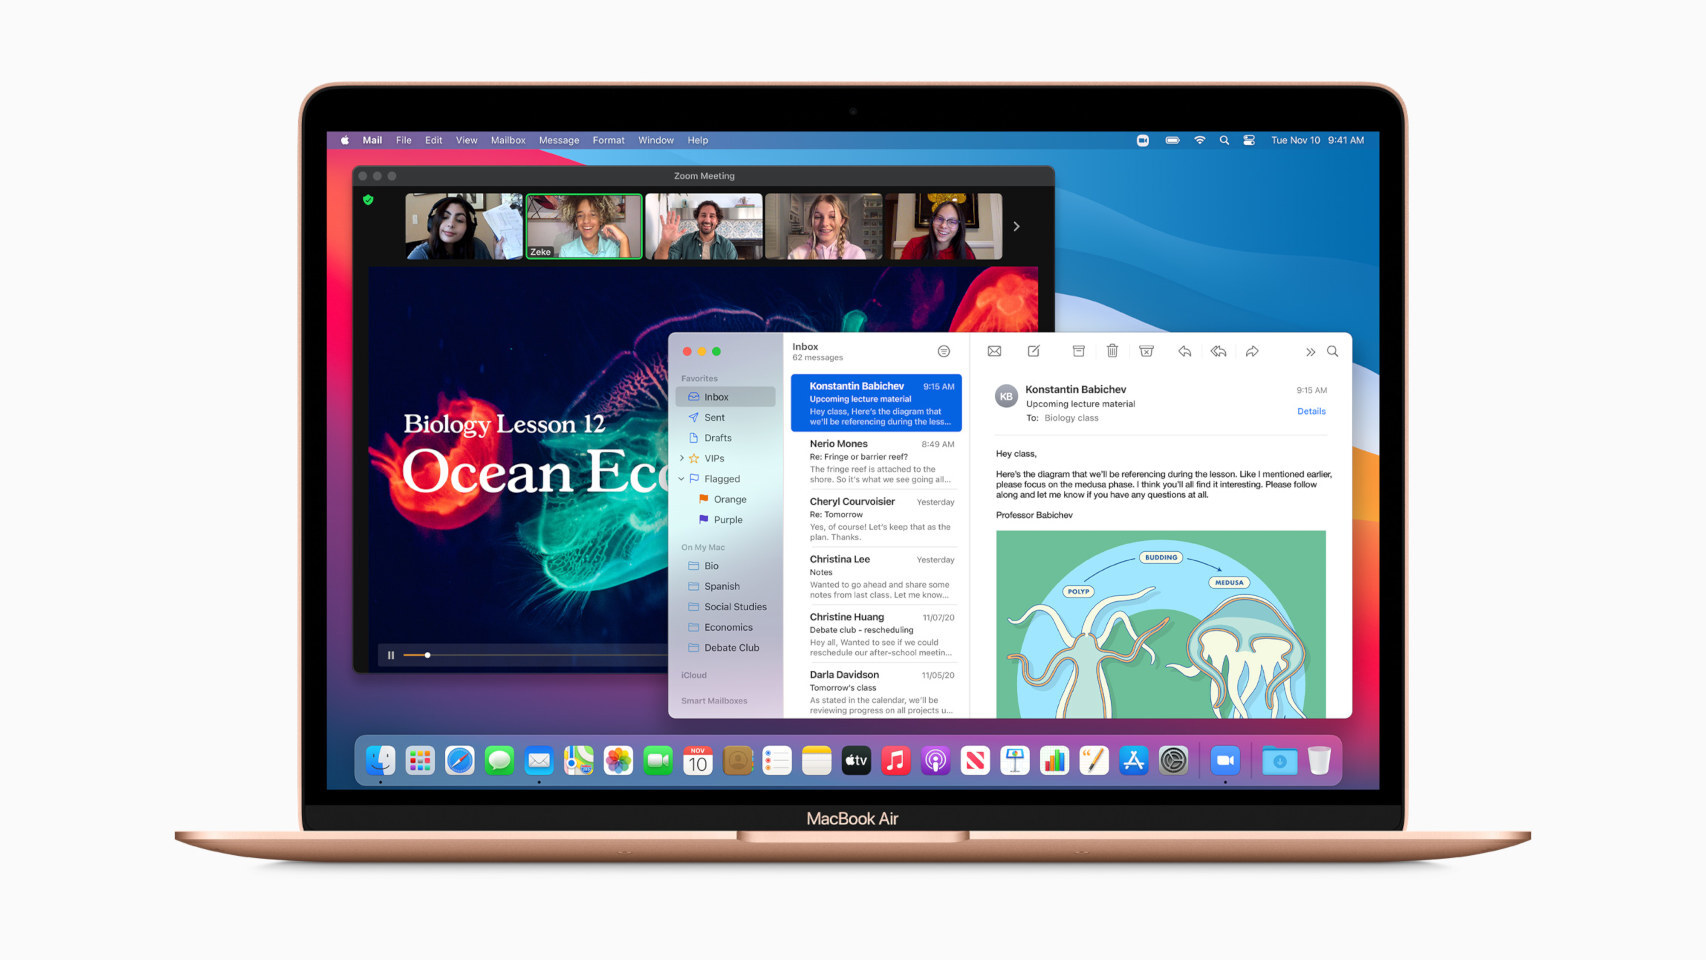 Nuevo MacBook Air con procesador Apple M1